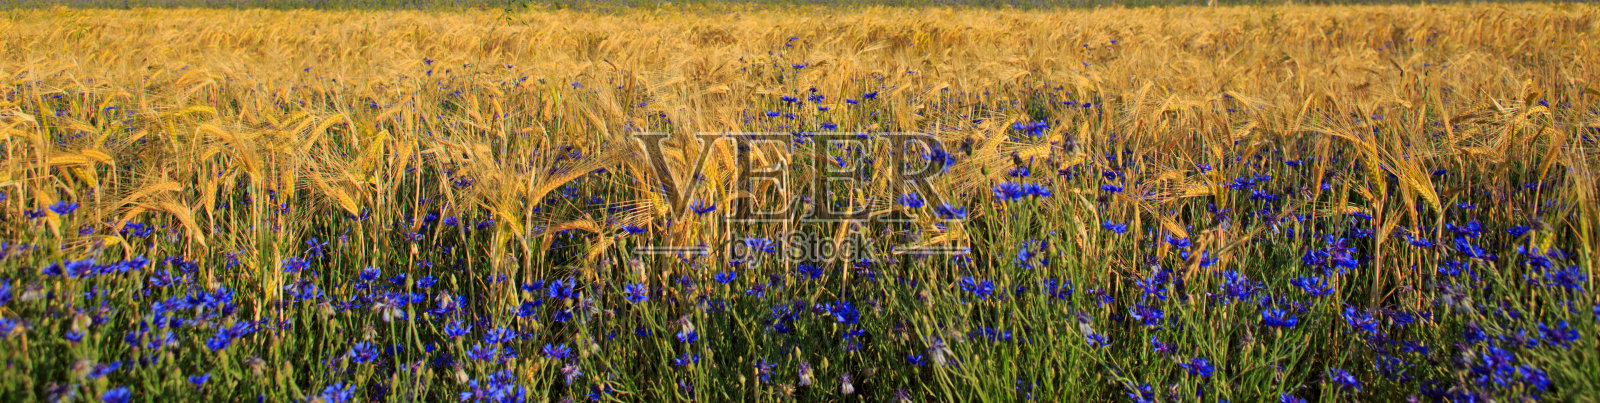 麦田里的蓝色矢车菊照片摄影图片